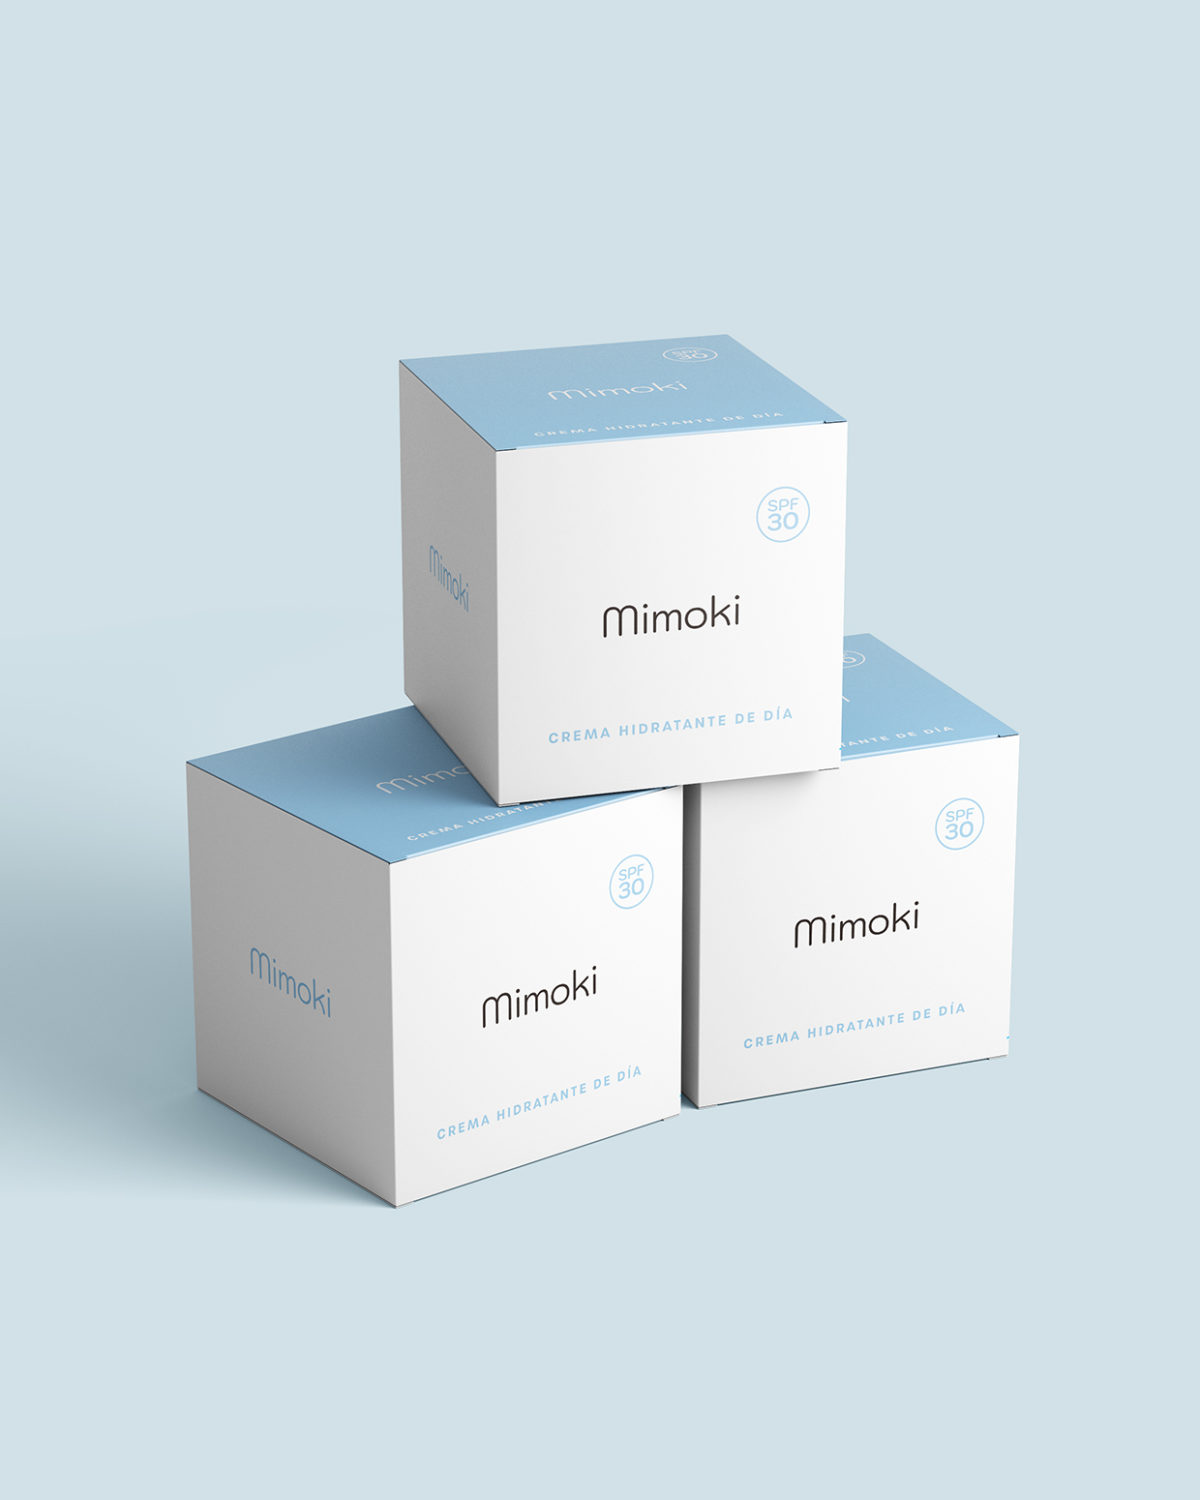 Diseño packaging mimoki